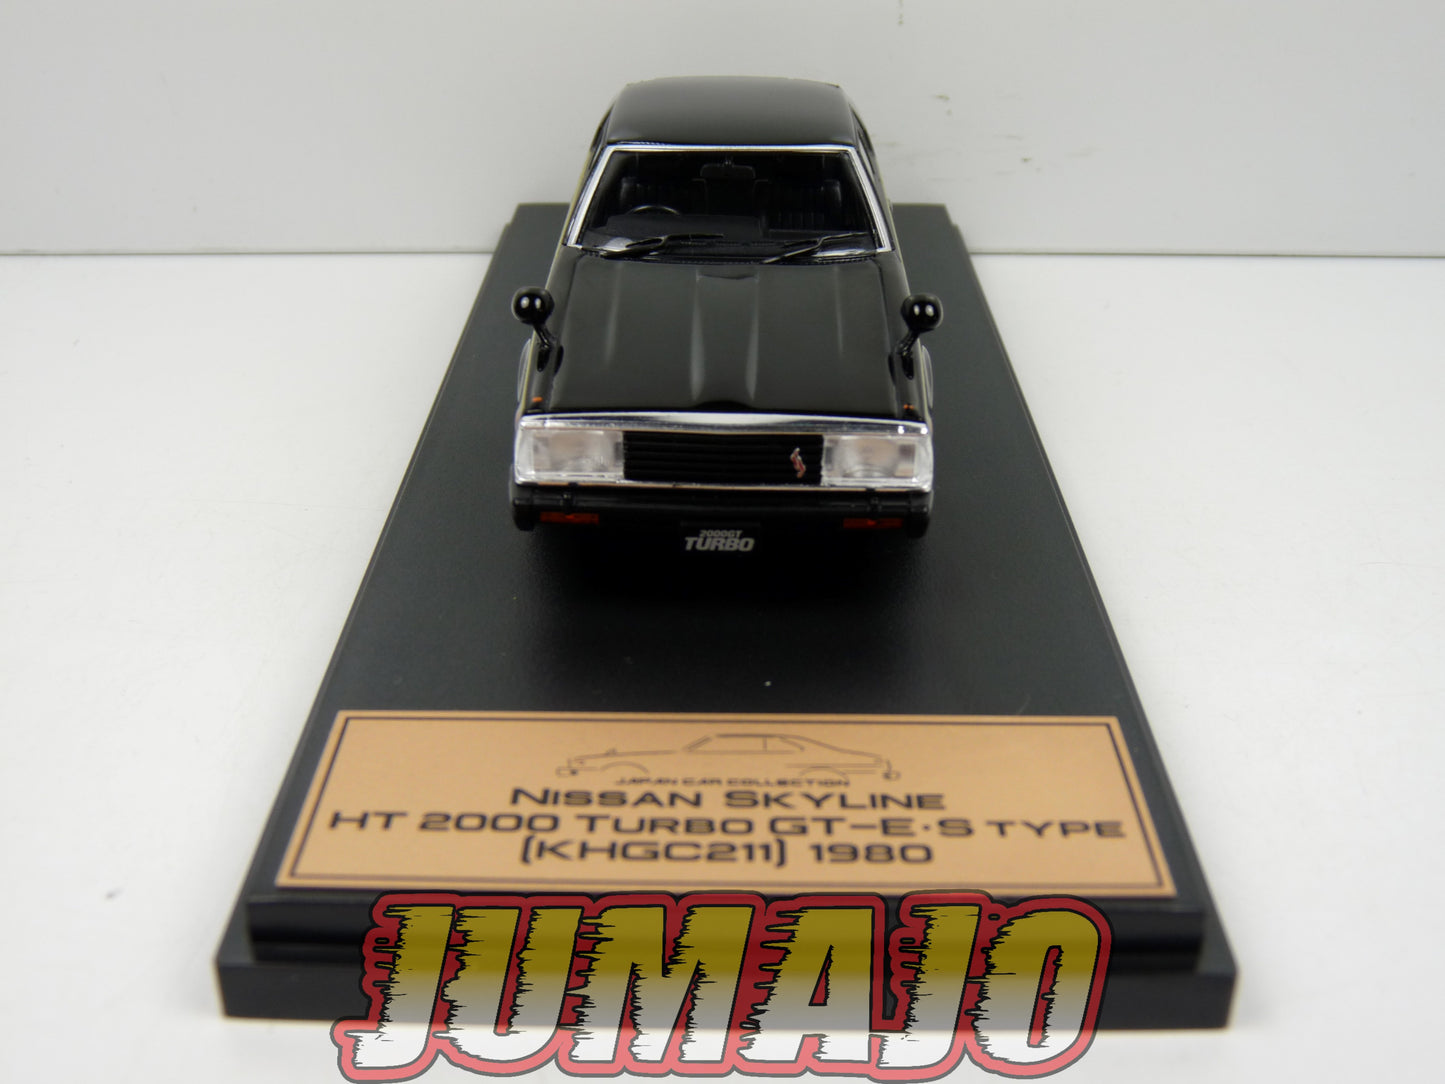 JPL24 1/43 HACHETTE Japon : Nissan Skyline HT 2000 Turbo GT-E.S type (KHGC211) 1980